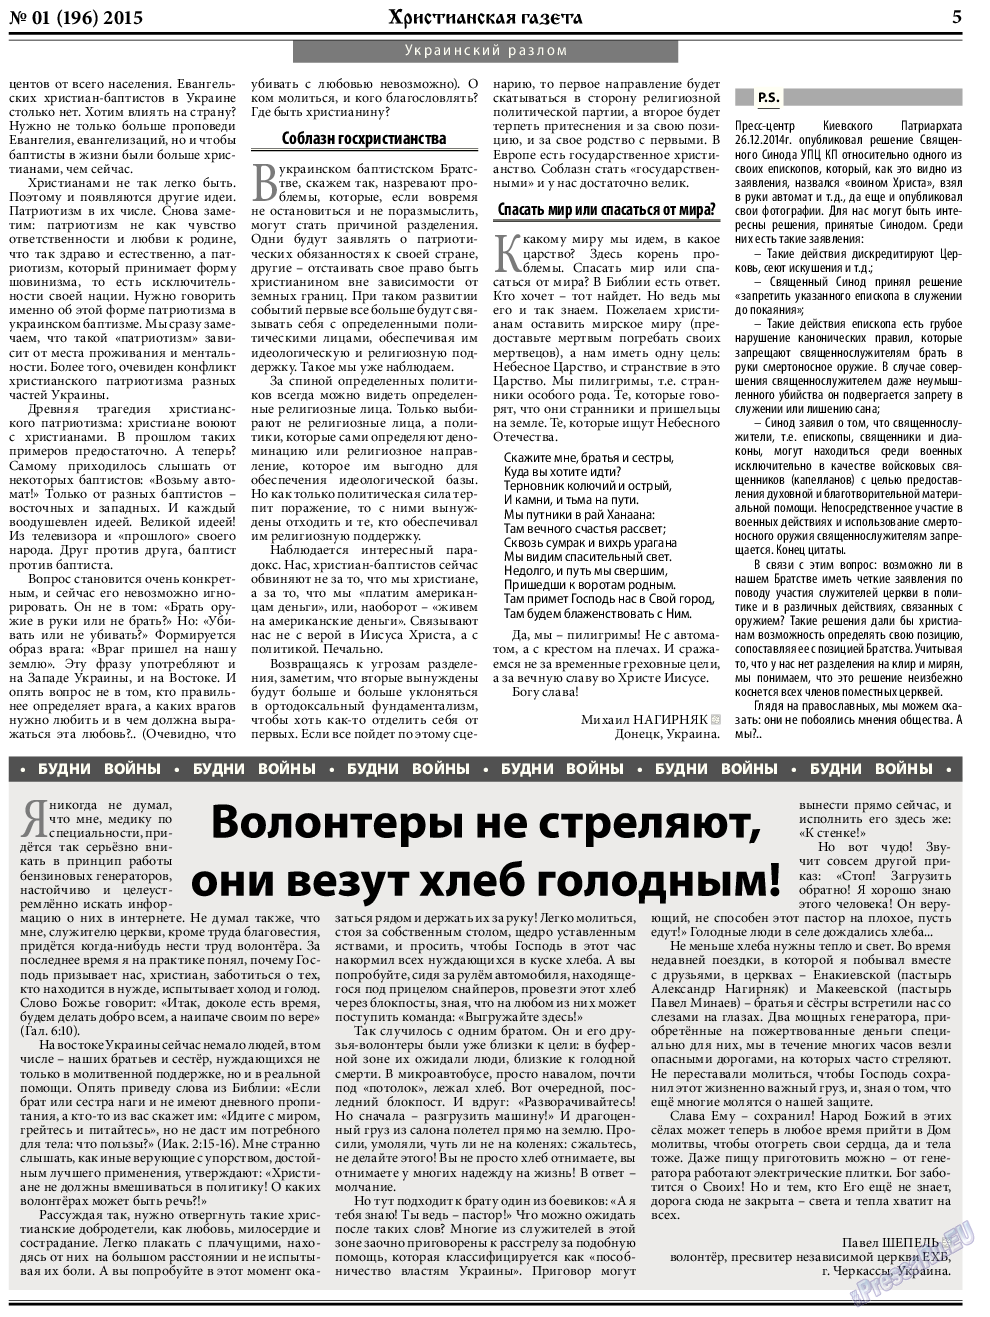 Христианская газета, газета. 2015 №1 стр.5